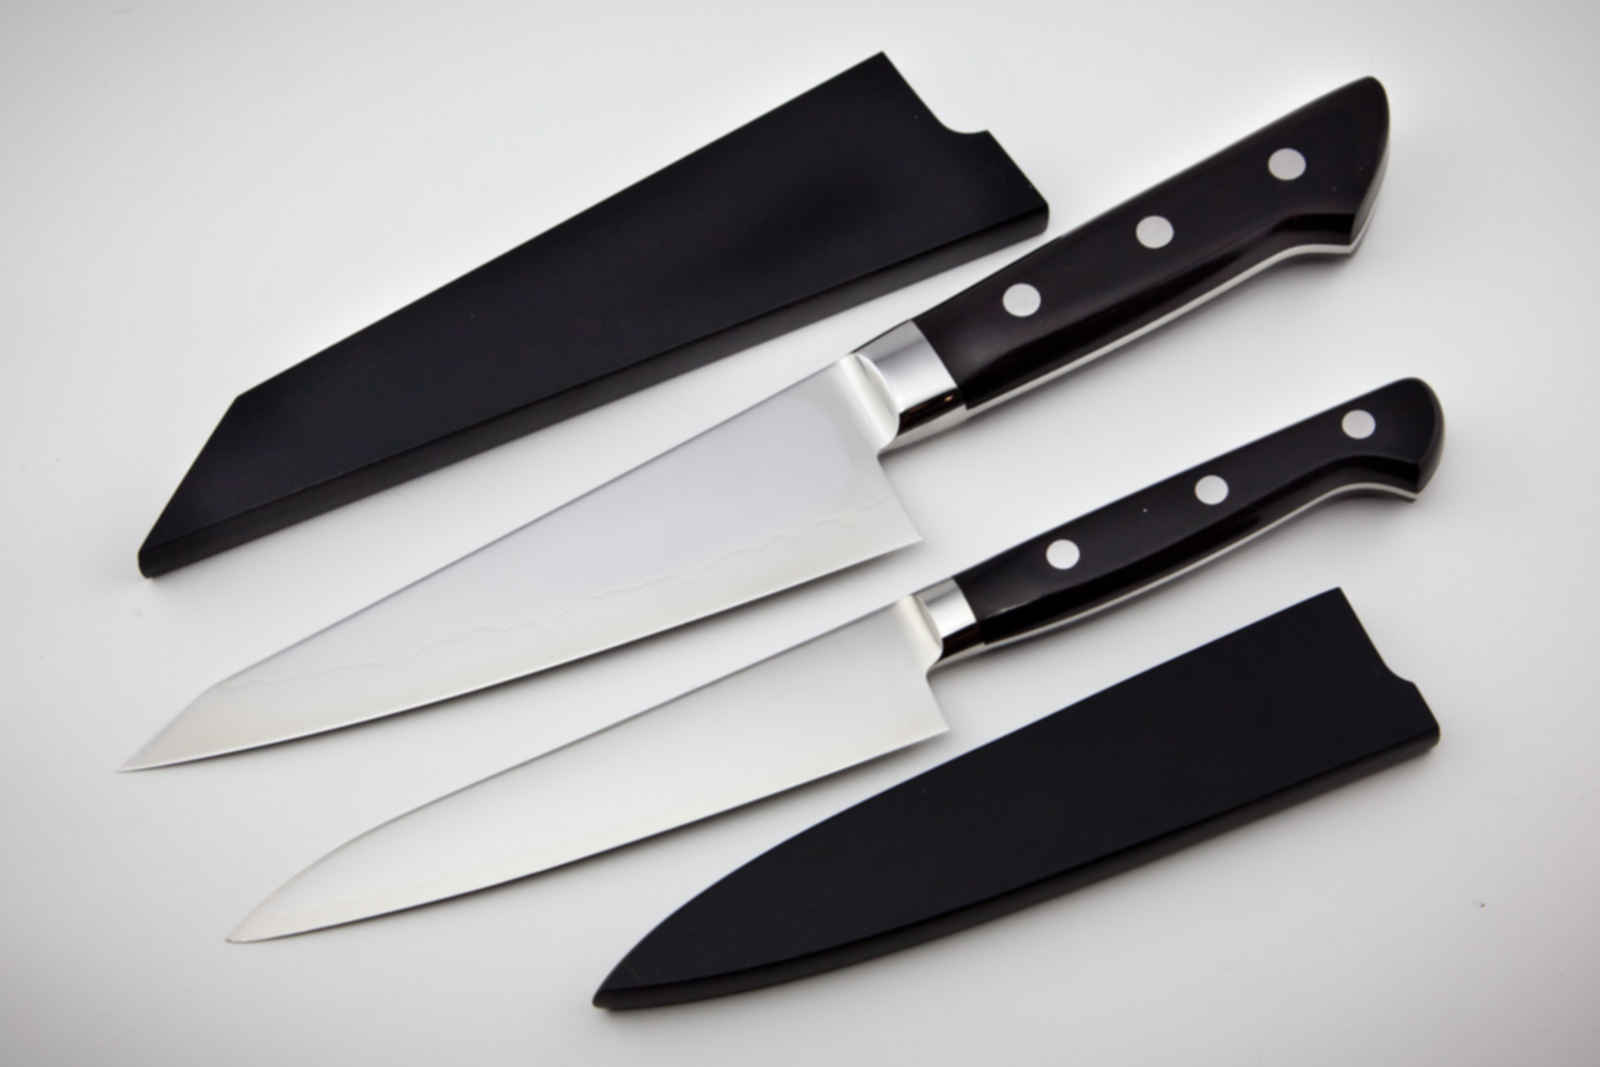 Ножевые компании. Кухонный нож. Поварской нож. Необычные кухонные ножи. Хороший поварской нож.